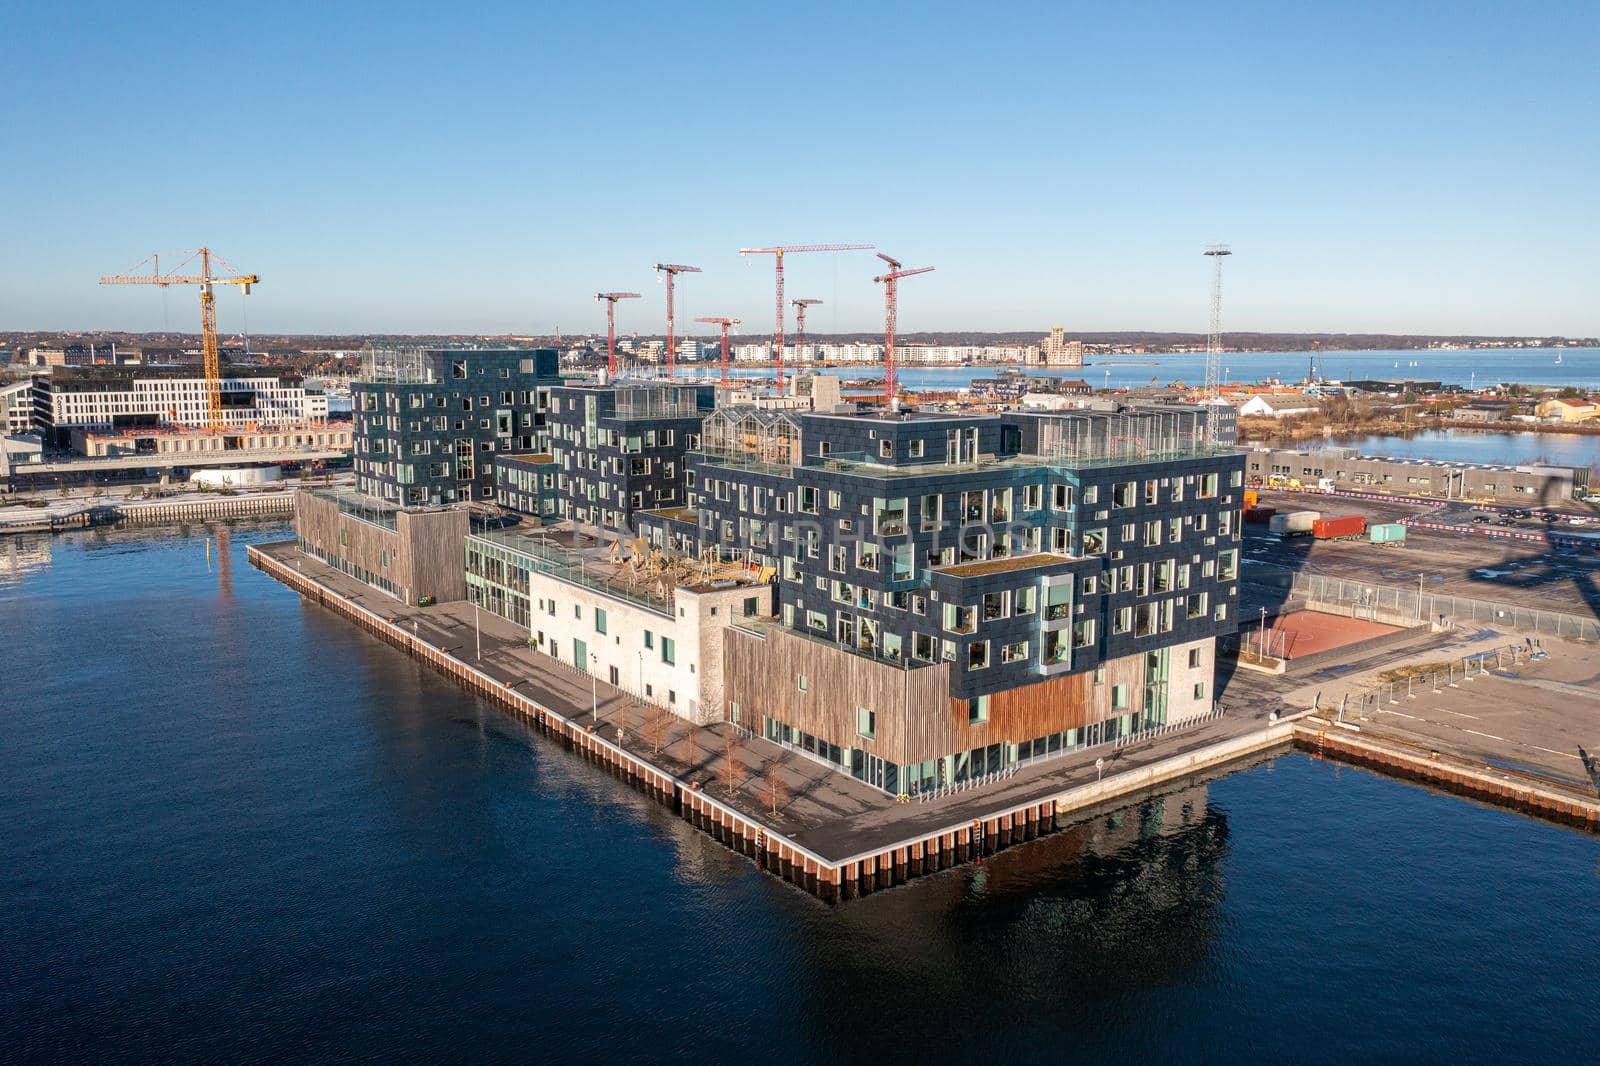 Drone view of Copenhagen International School by oliverfoerstner